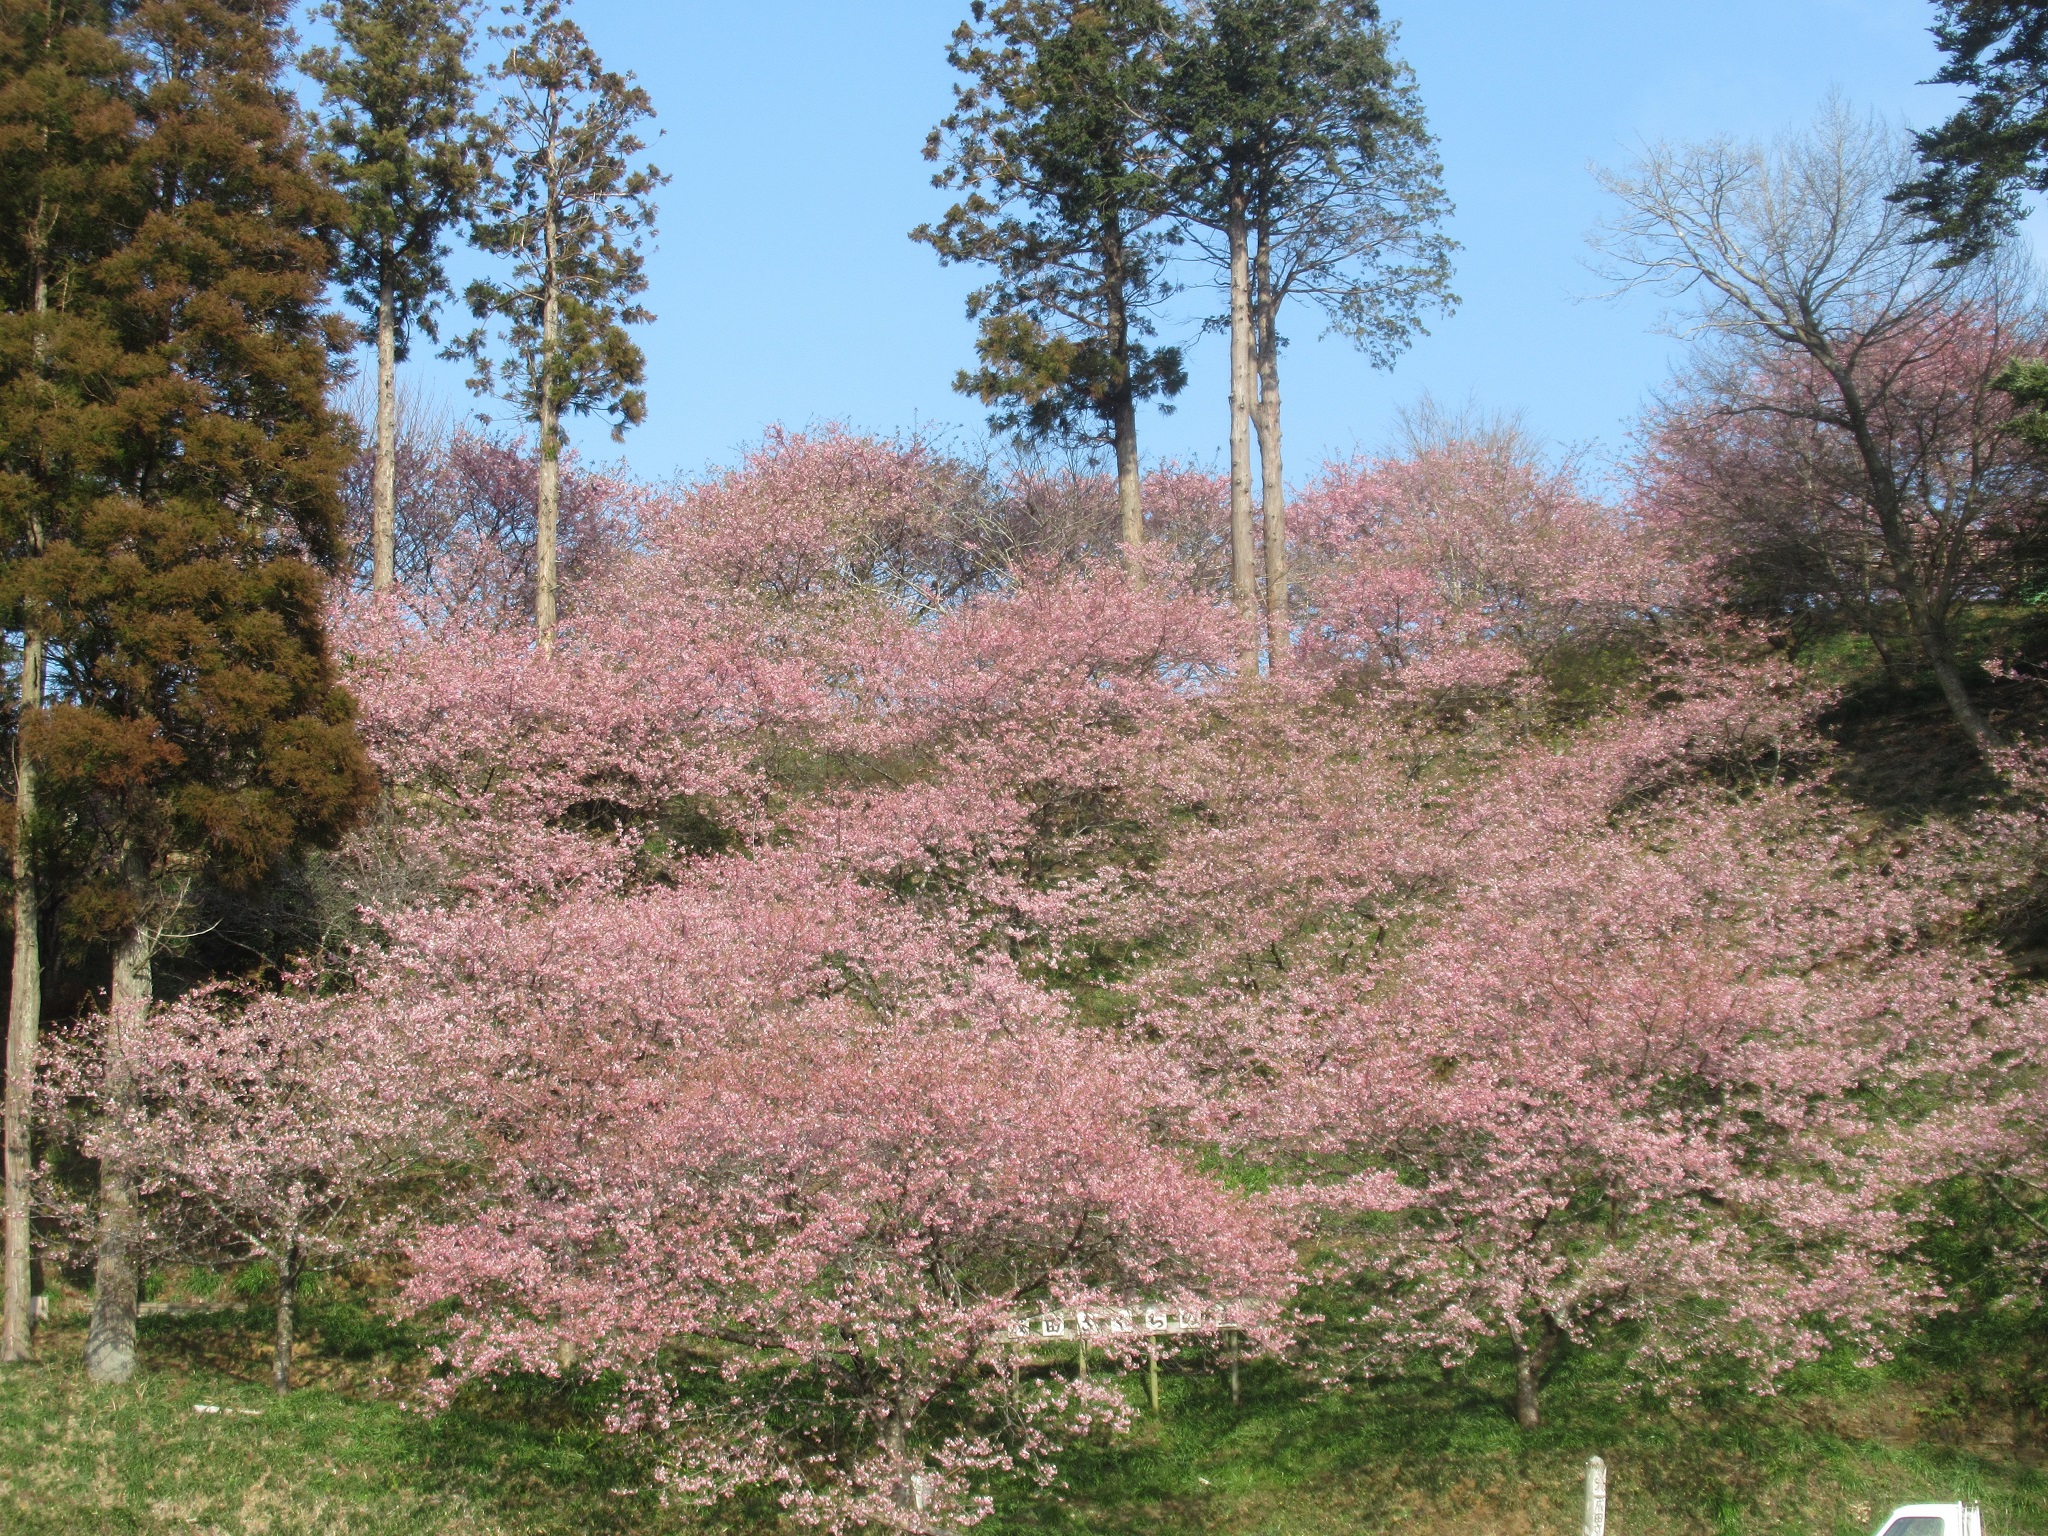 取香川散策路から望む里山の景観写真2